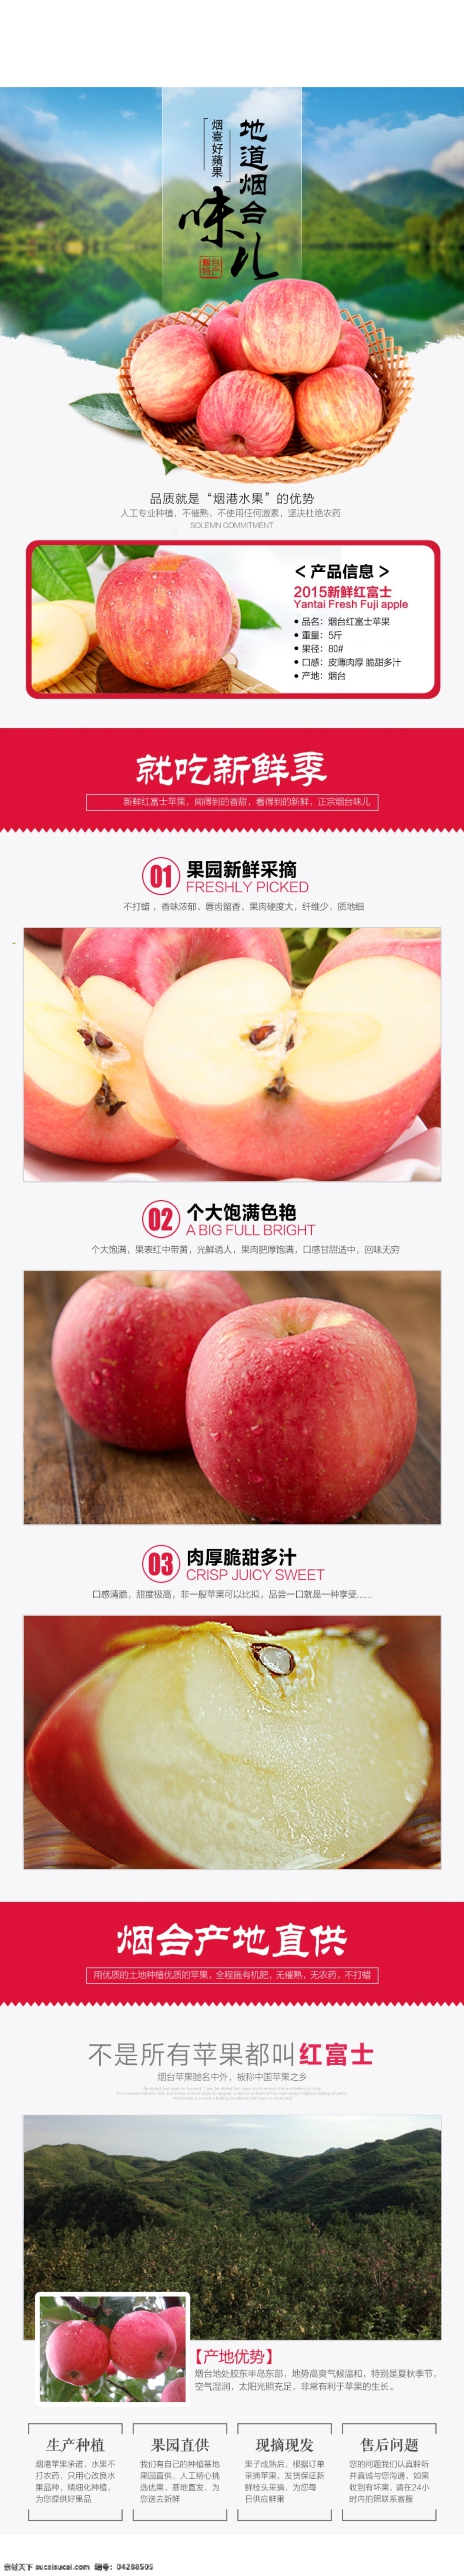 淘宝 红富士 苹果 水果 详情 页 详情页 农副产品 烟台苹果描述